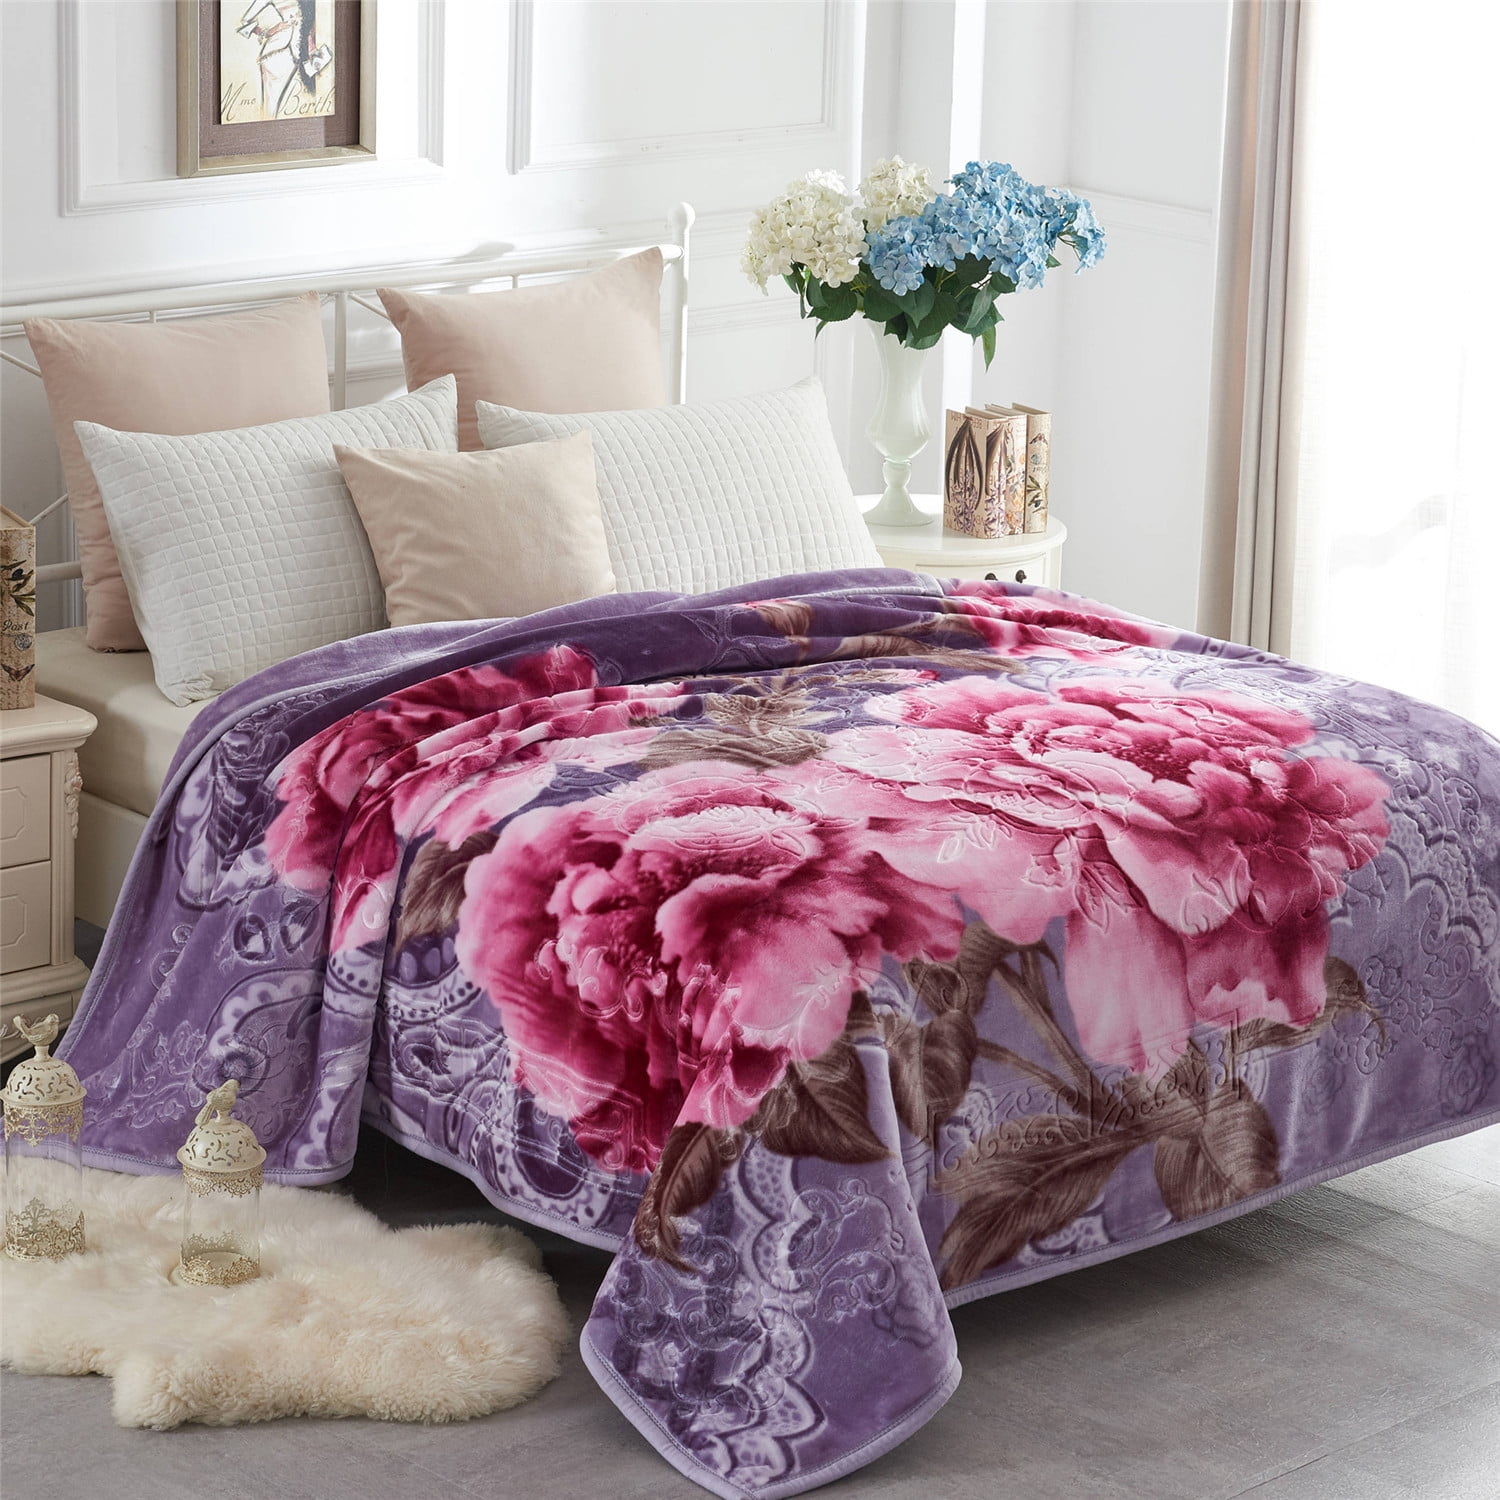 Queen Size Korean Mink Blanket 8 LBS Heavy Warm Thick Super Soft Purple Flower 